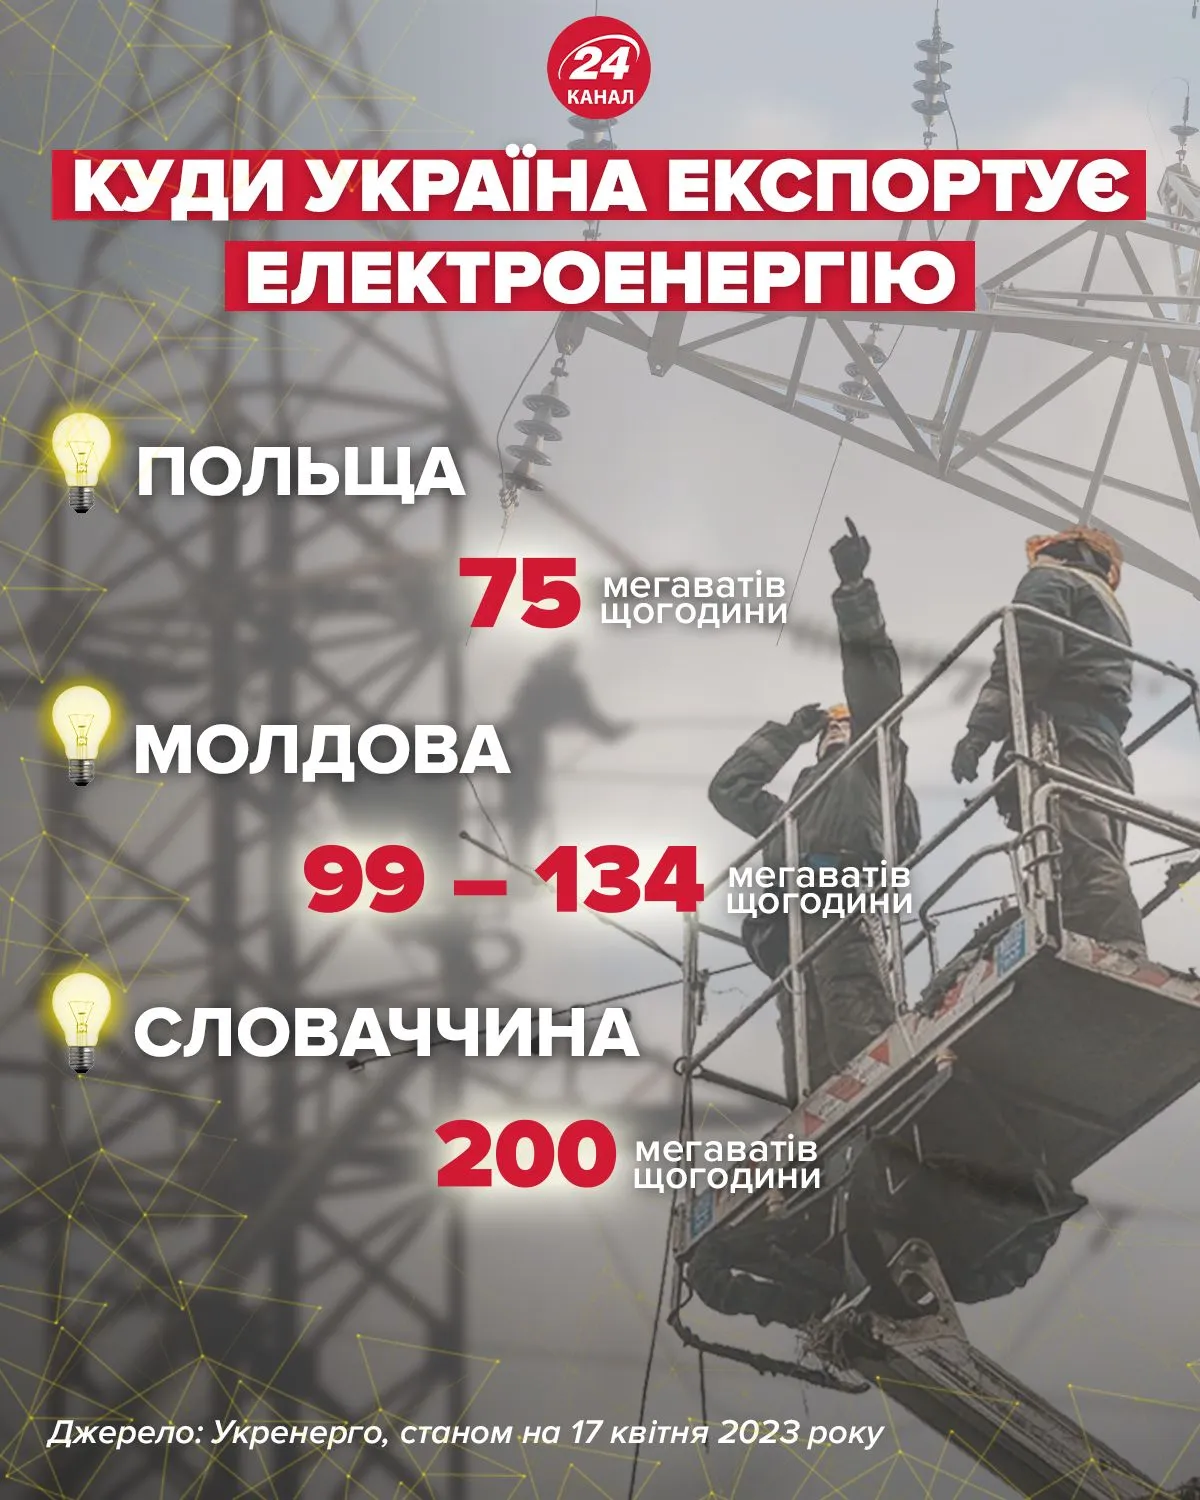 Куда экспортирует электроэнергию Украина